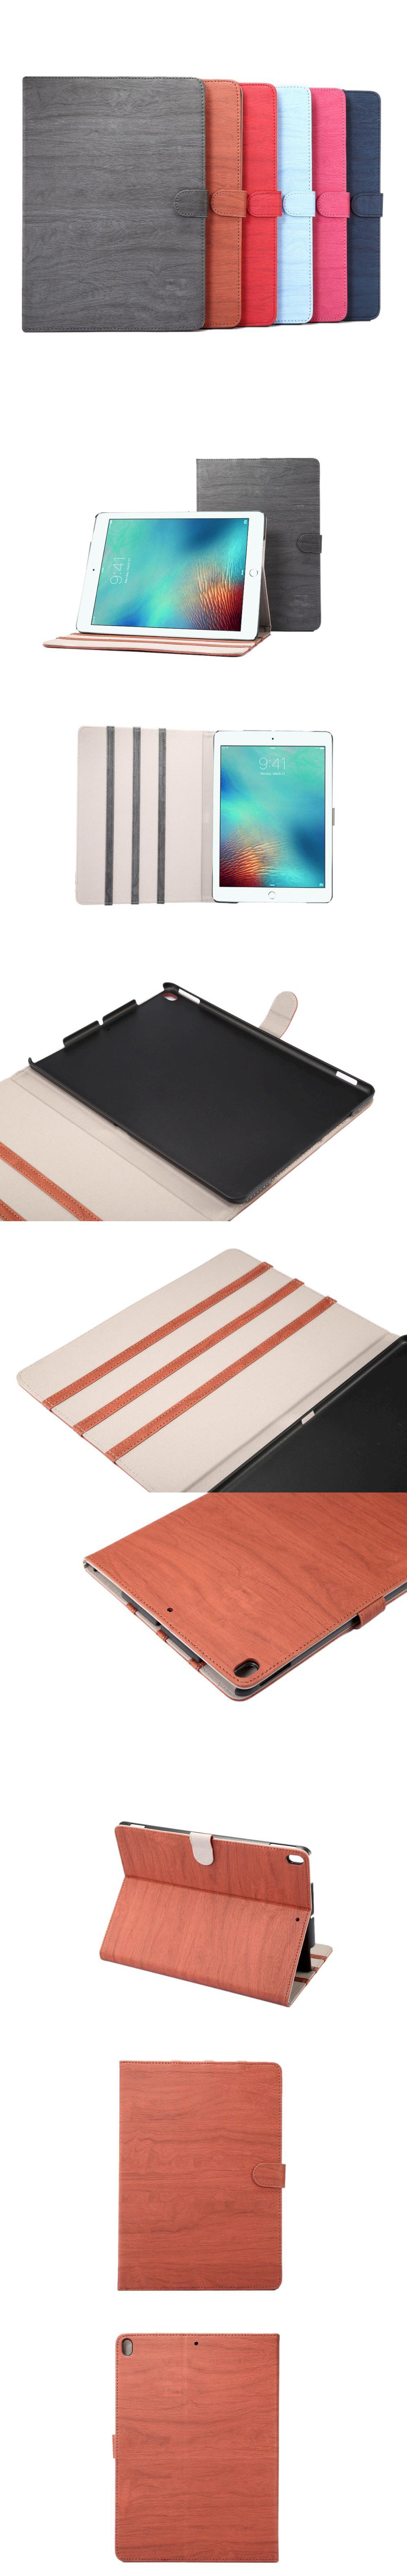 510-570-IPad-木紋造型皮紋扣帶皮套平板套翻蓋保護套